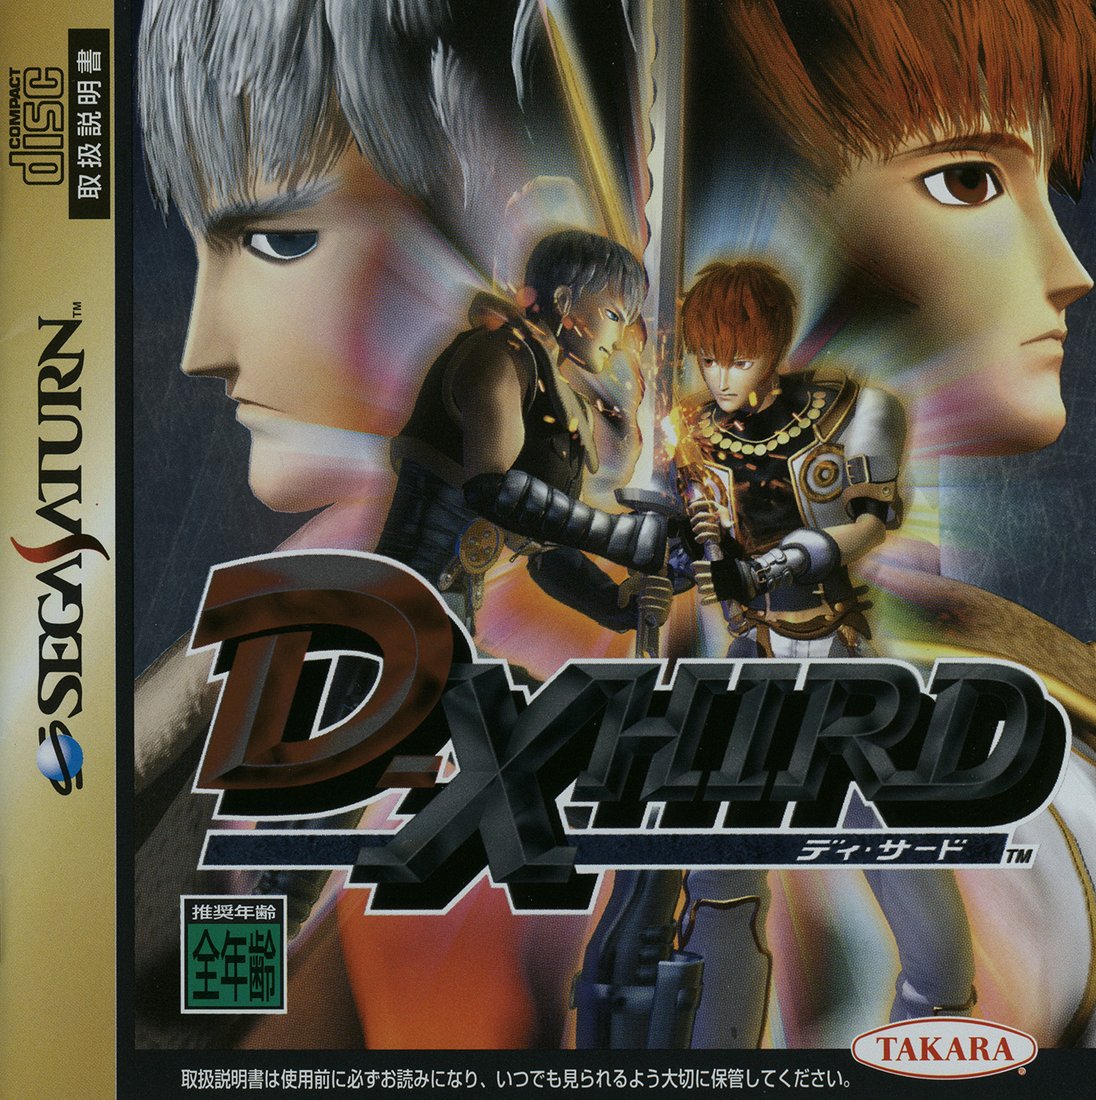 Capa do jogo D-Xhird